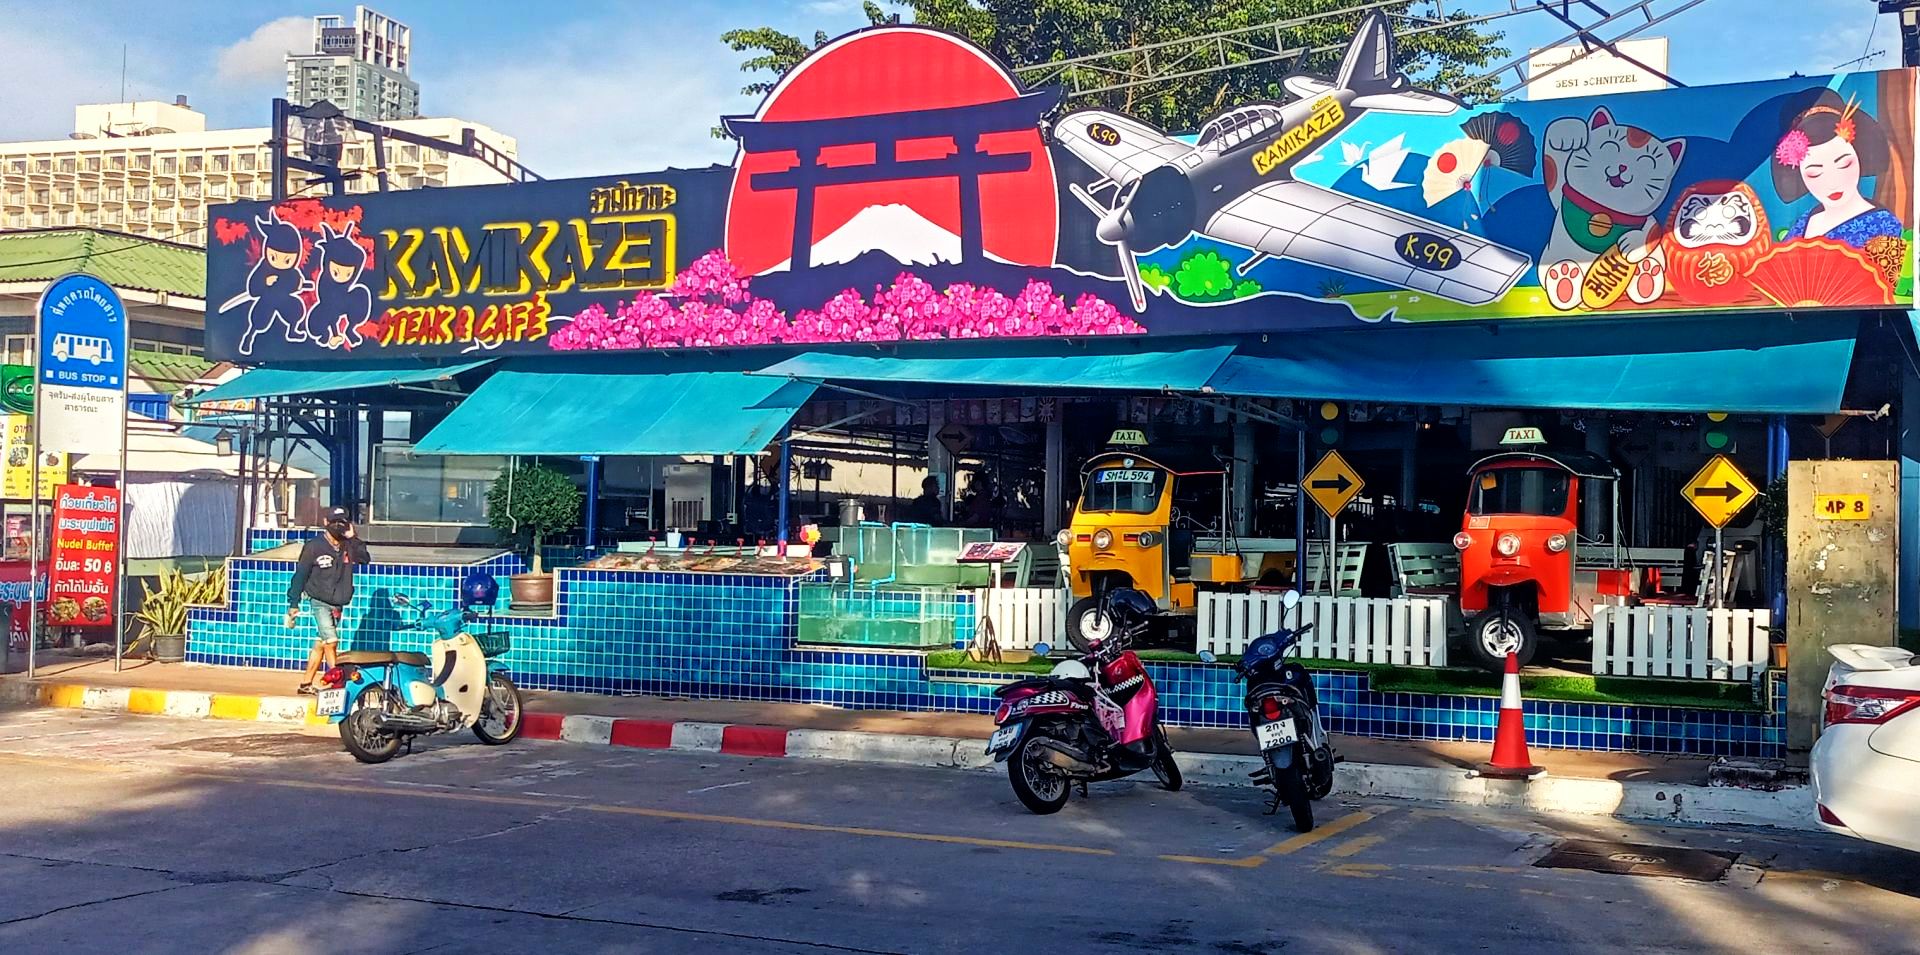 2nd Road Pattaya